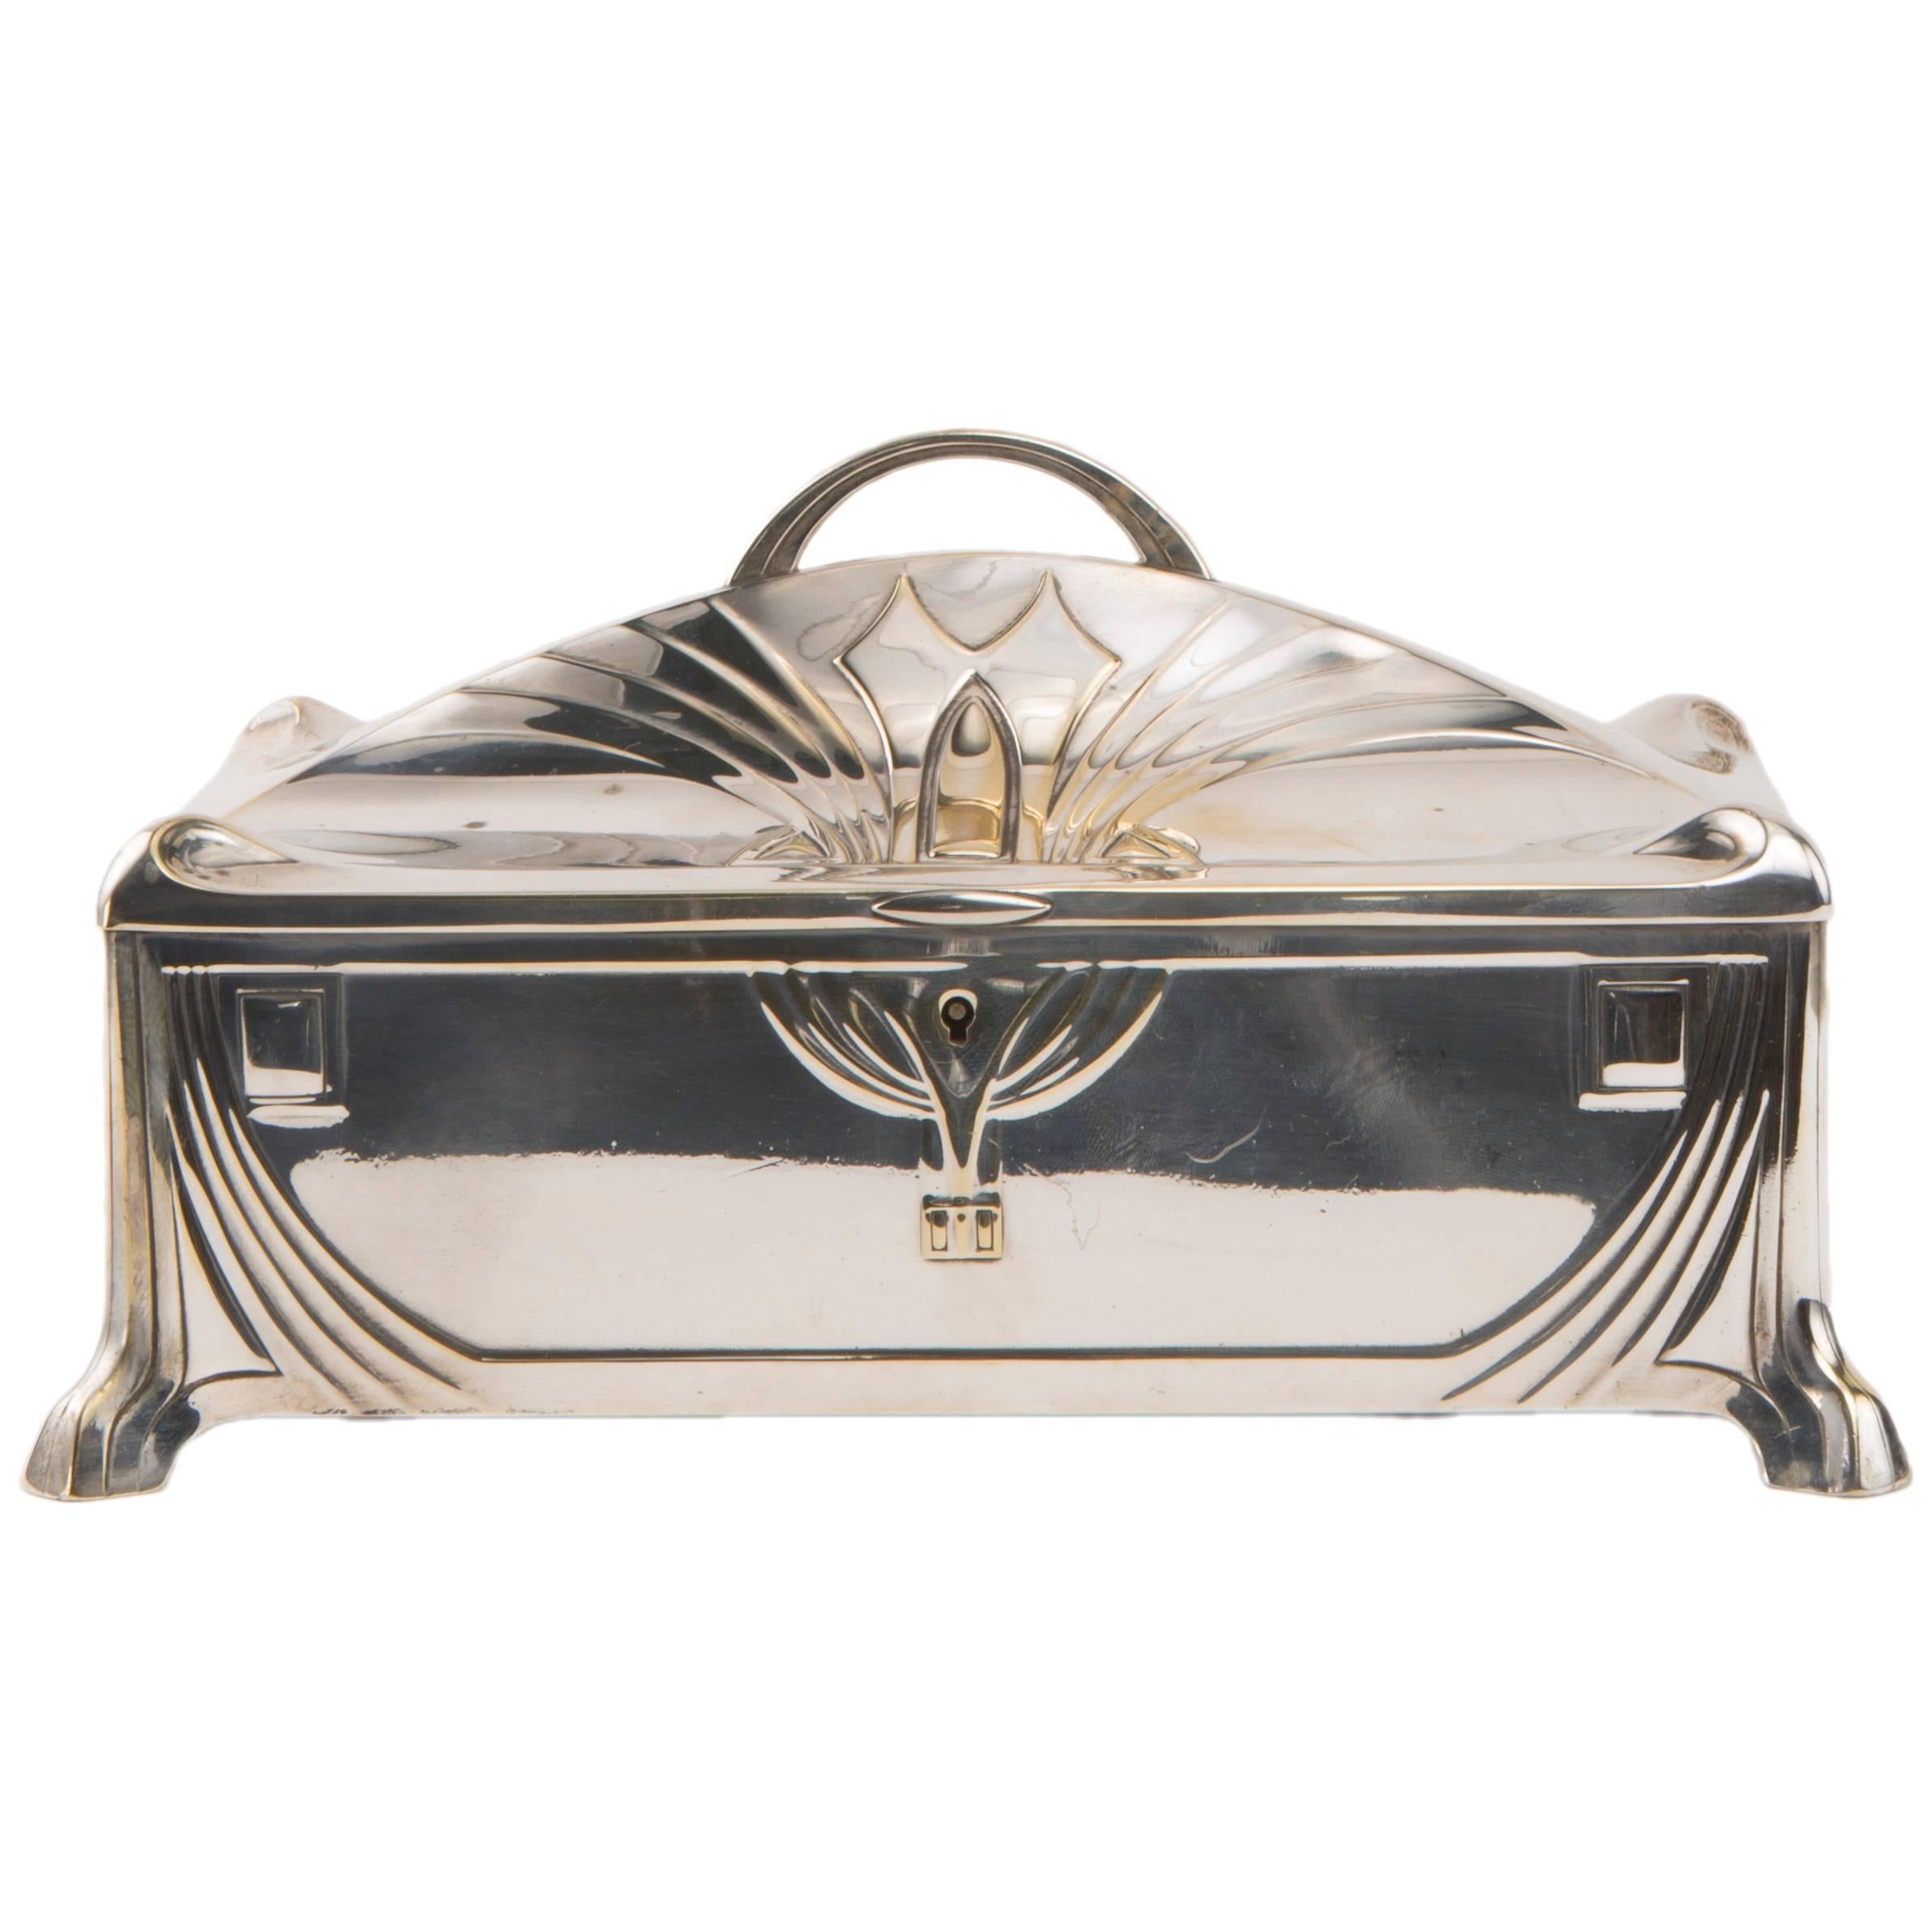 Silvered Art Nouveau Jewelry Casket by W.M.F.